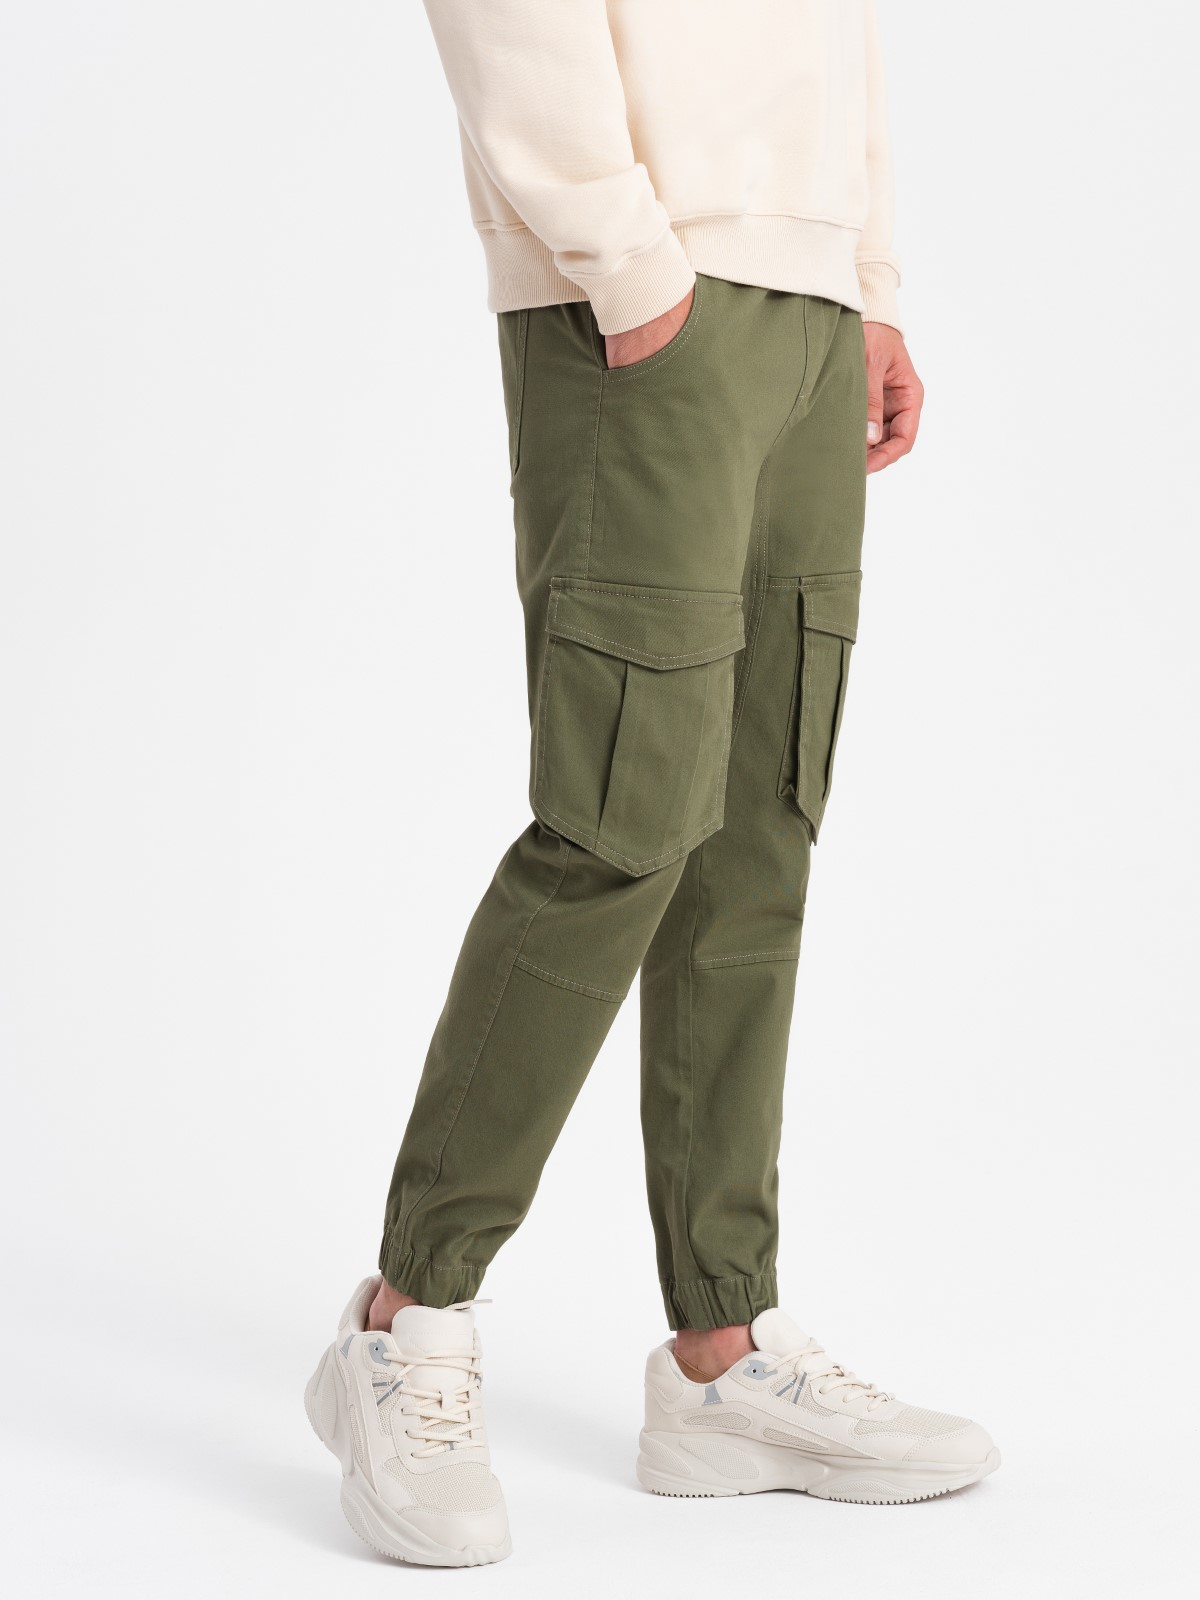 Men's pants joggers P886 - olive | MODONE wholesale - Clothing For Men